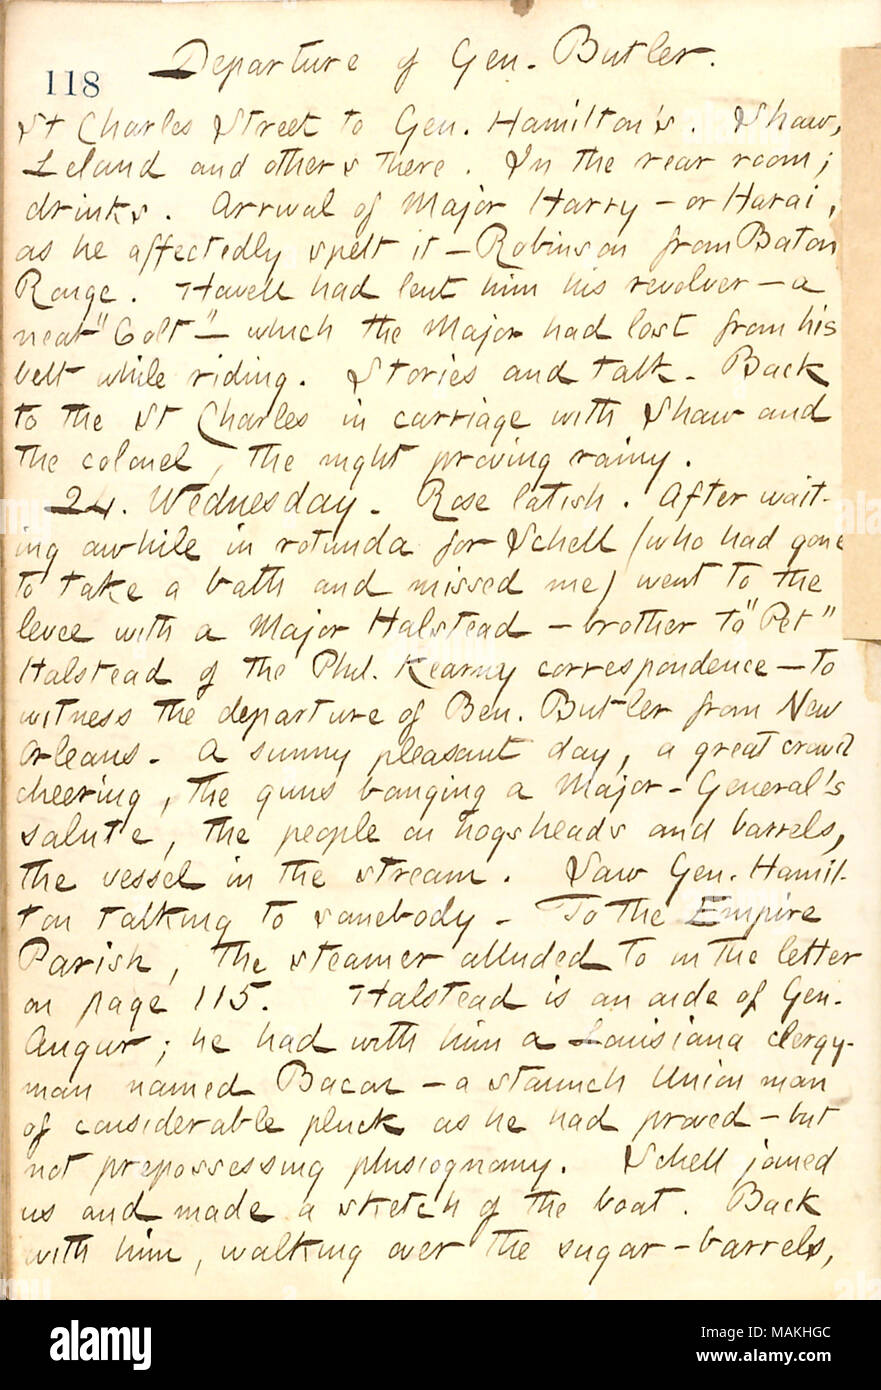 Per quanto riguarda la partenza del generale Butler da New Orleans. Titolo: Thomas Butler diari Gunn: Volume 21, pagina 129, dicembre 23, 1862 . Il 23 dicembre 1862. Gunn, Thomas Butler, 1826-1903 Foto Stock